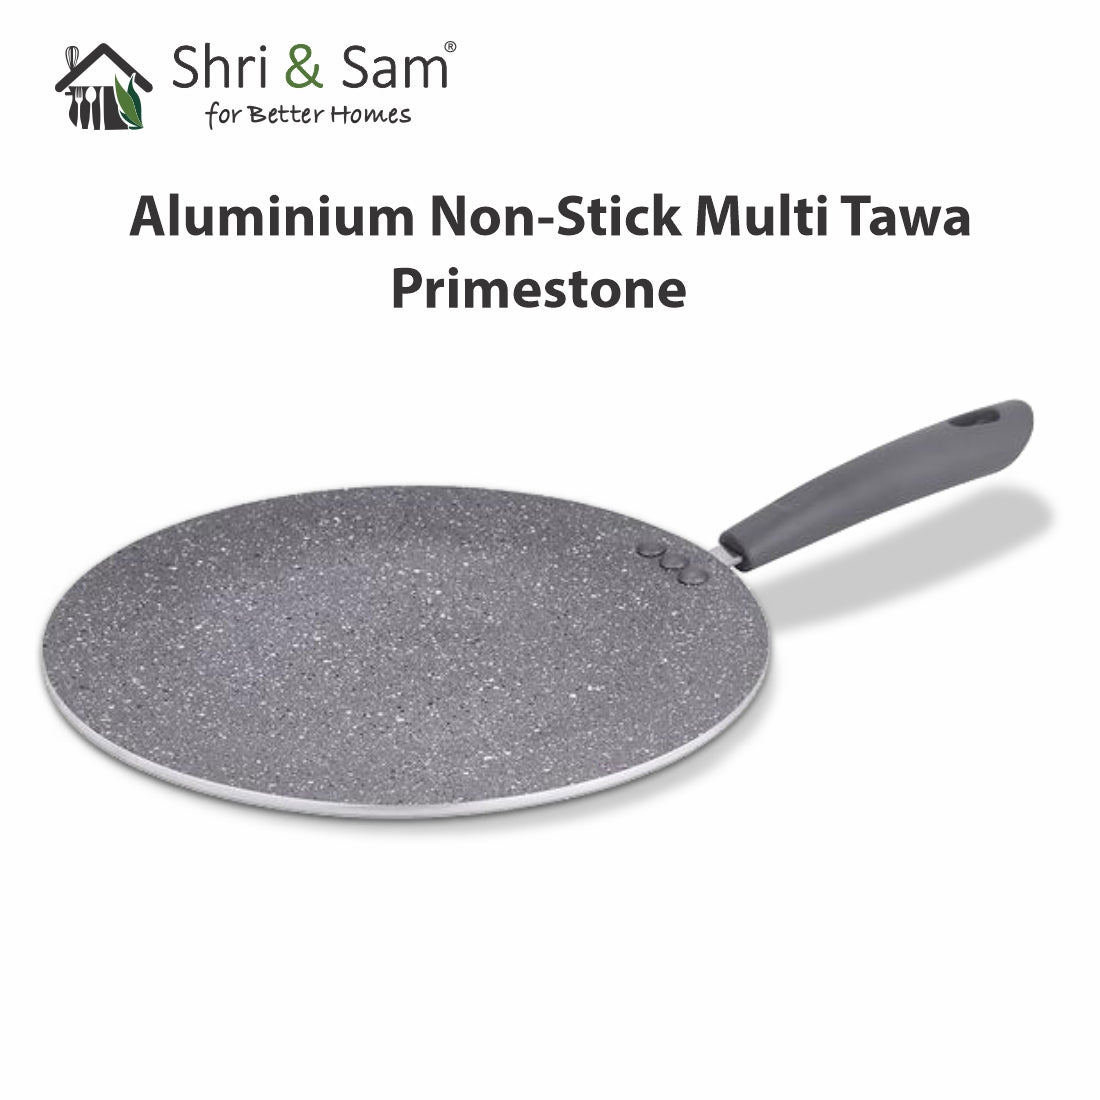 Aluminium Non-Stick Multi Tawa Primestone